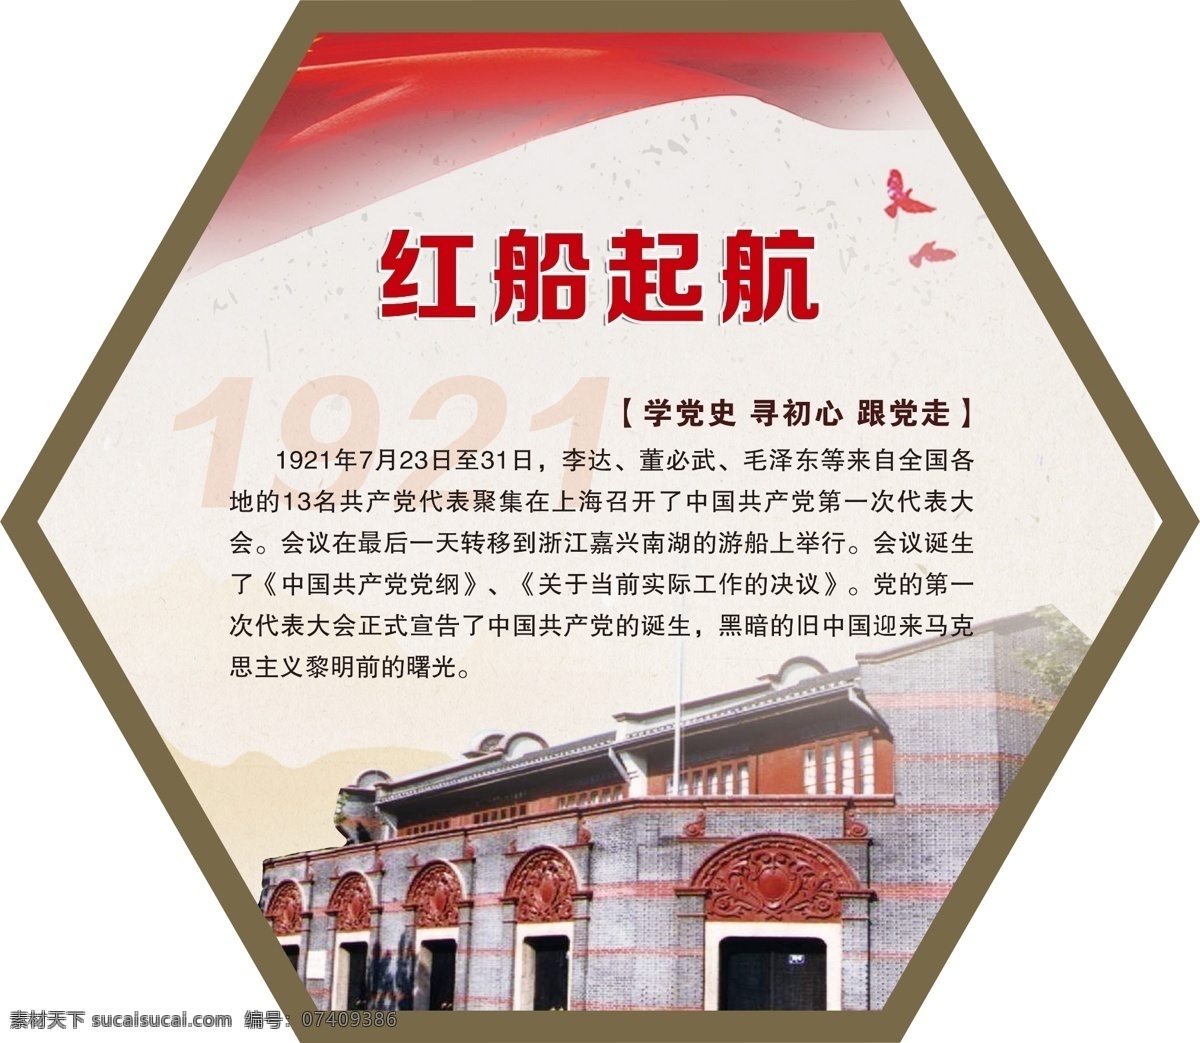 党的历程 党的光辉历程 红船起航 历程 社区文化墙 室内广告设计